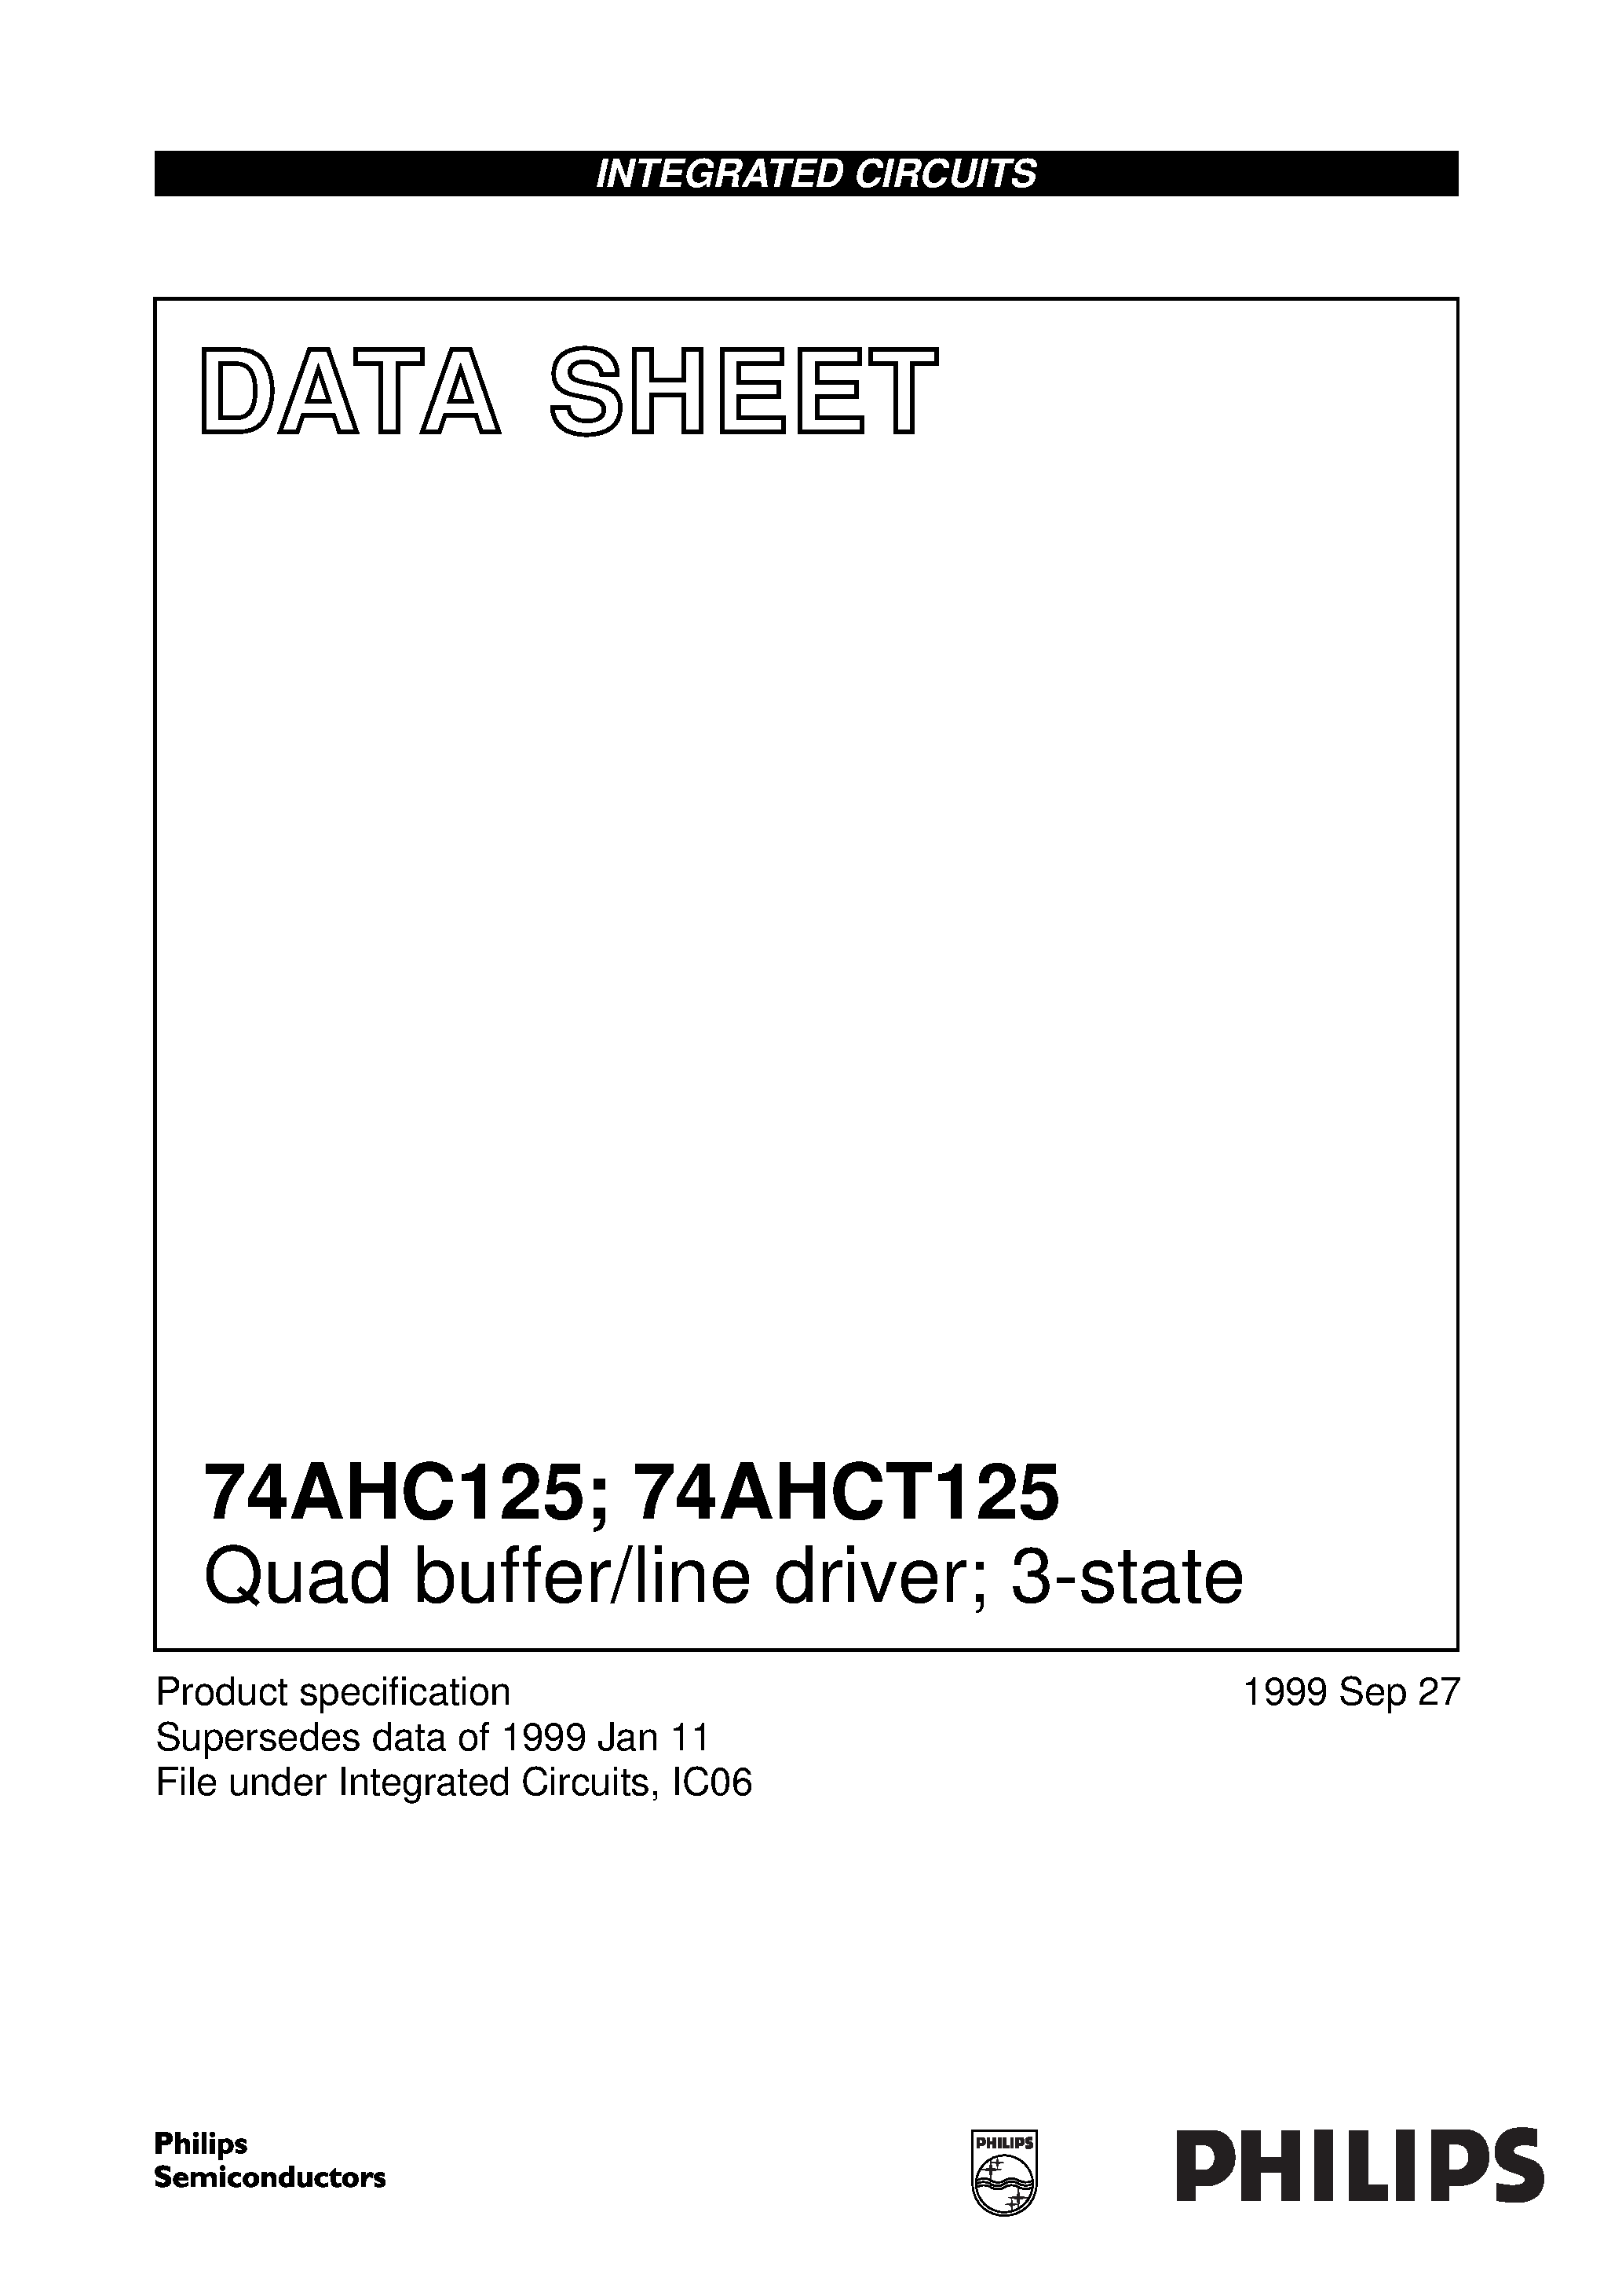 Даташит 74AHC125PW - Quad buffer/line driver; 3-state страница 1